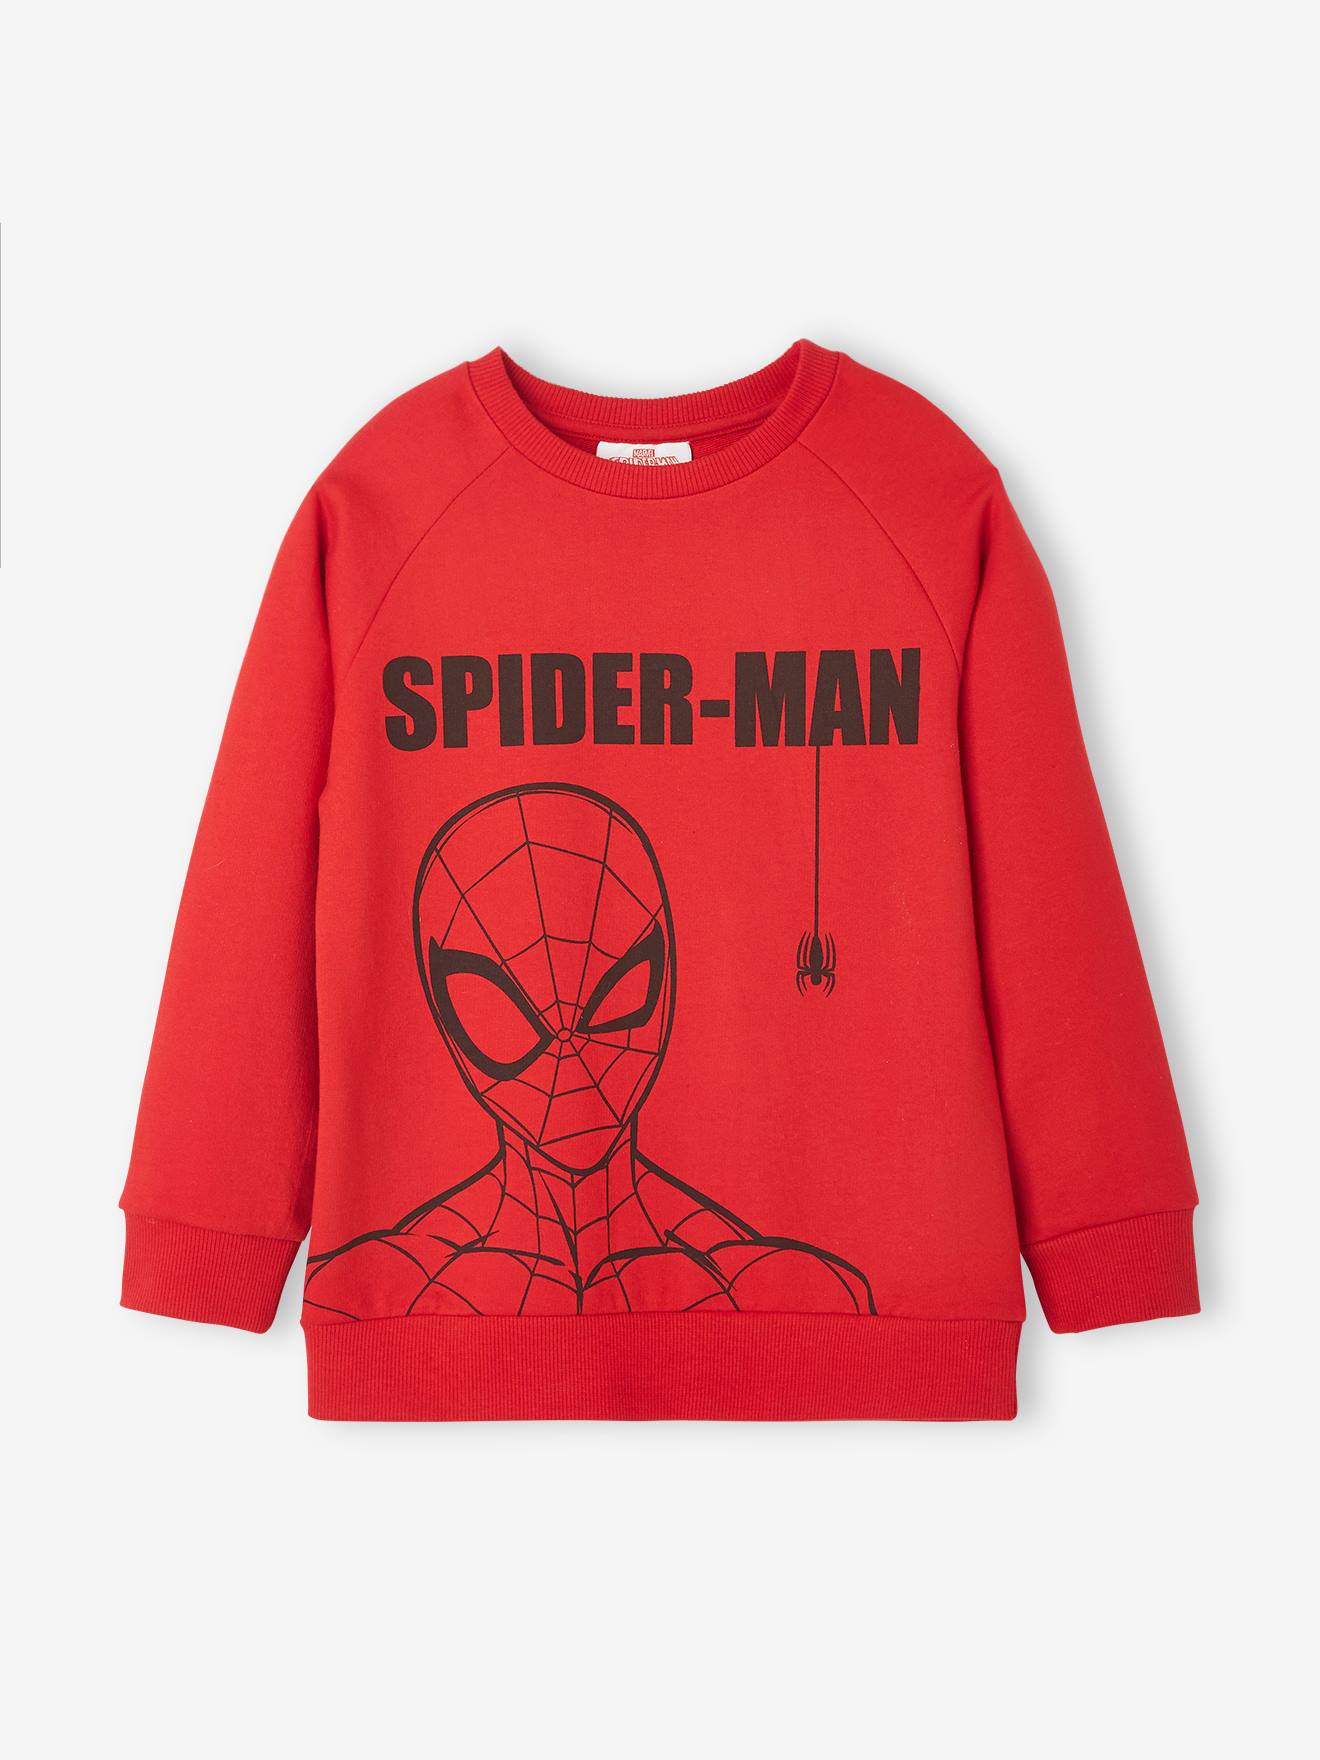 Jongenspyjama Marvel¨-Spiderman rood